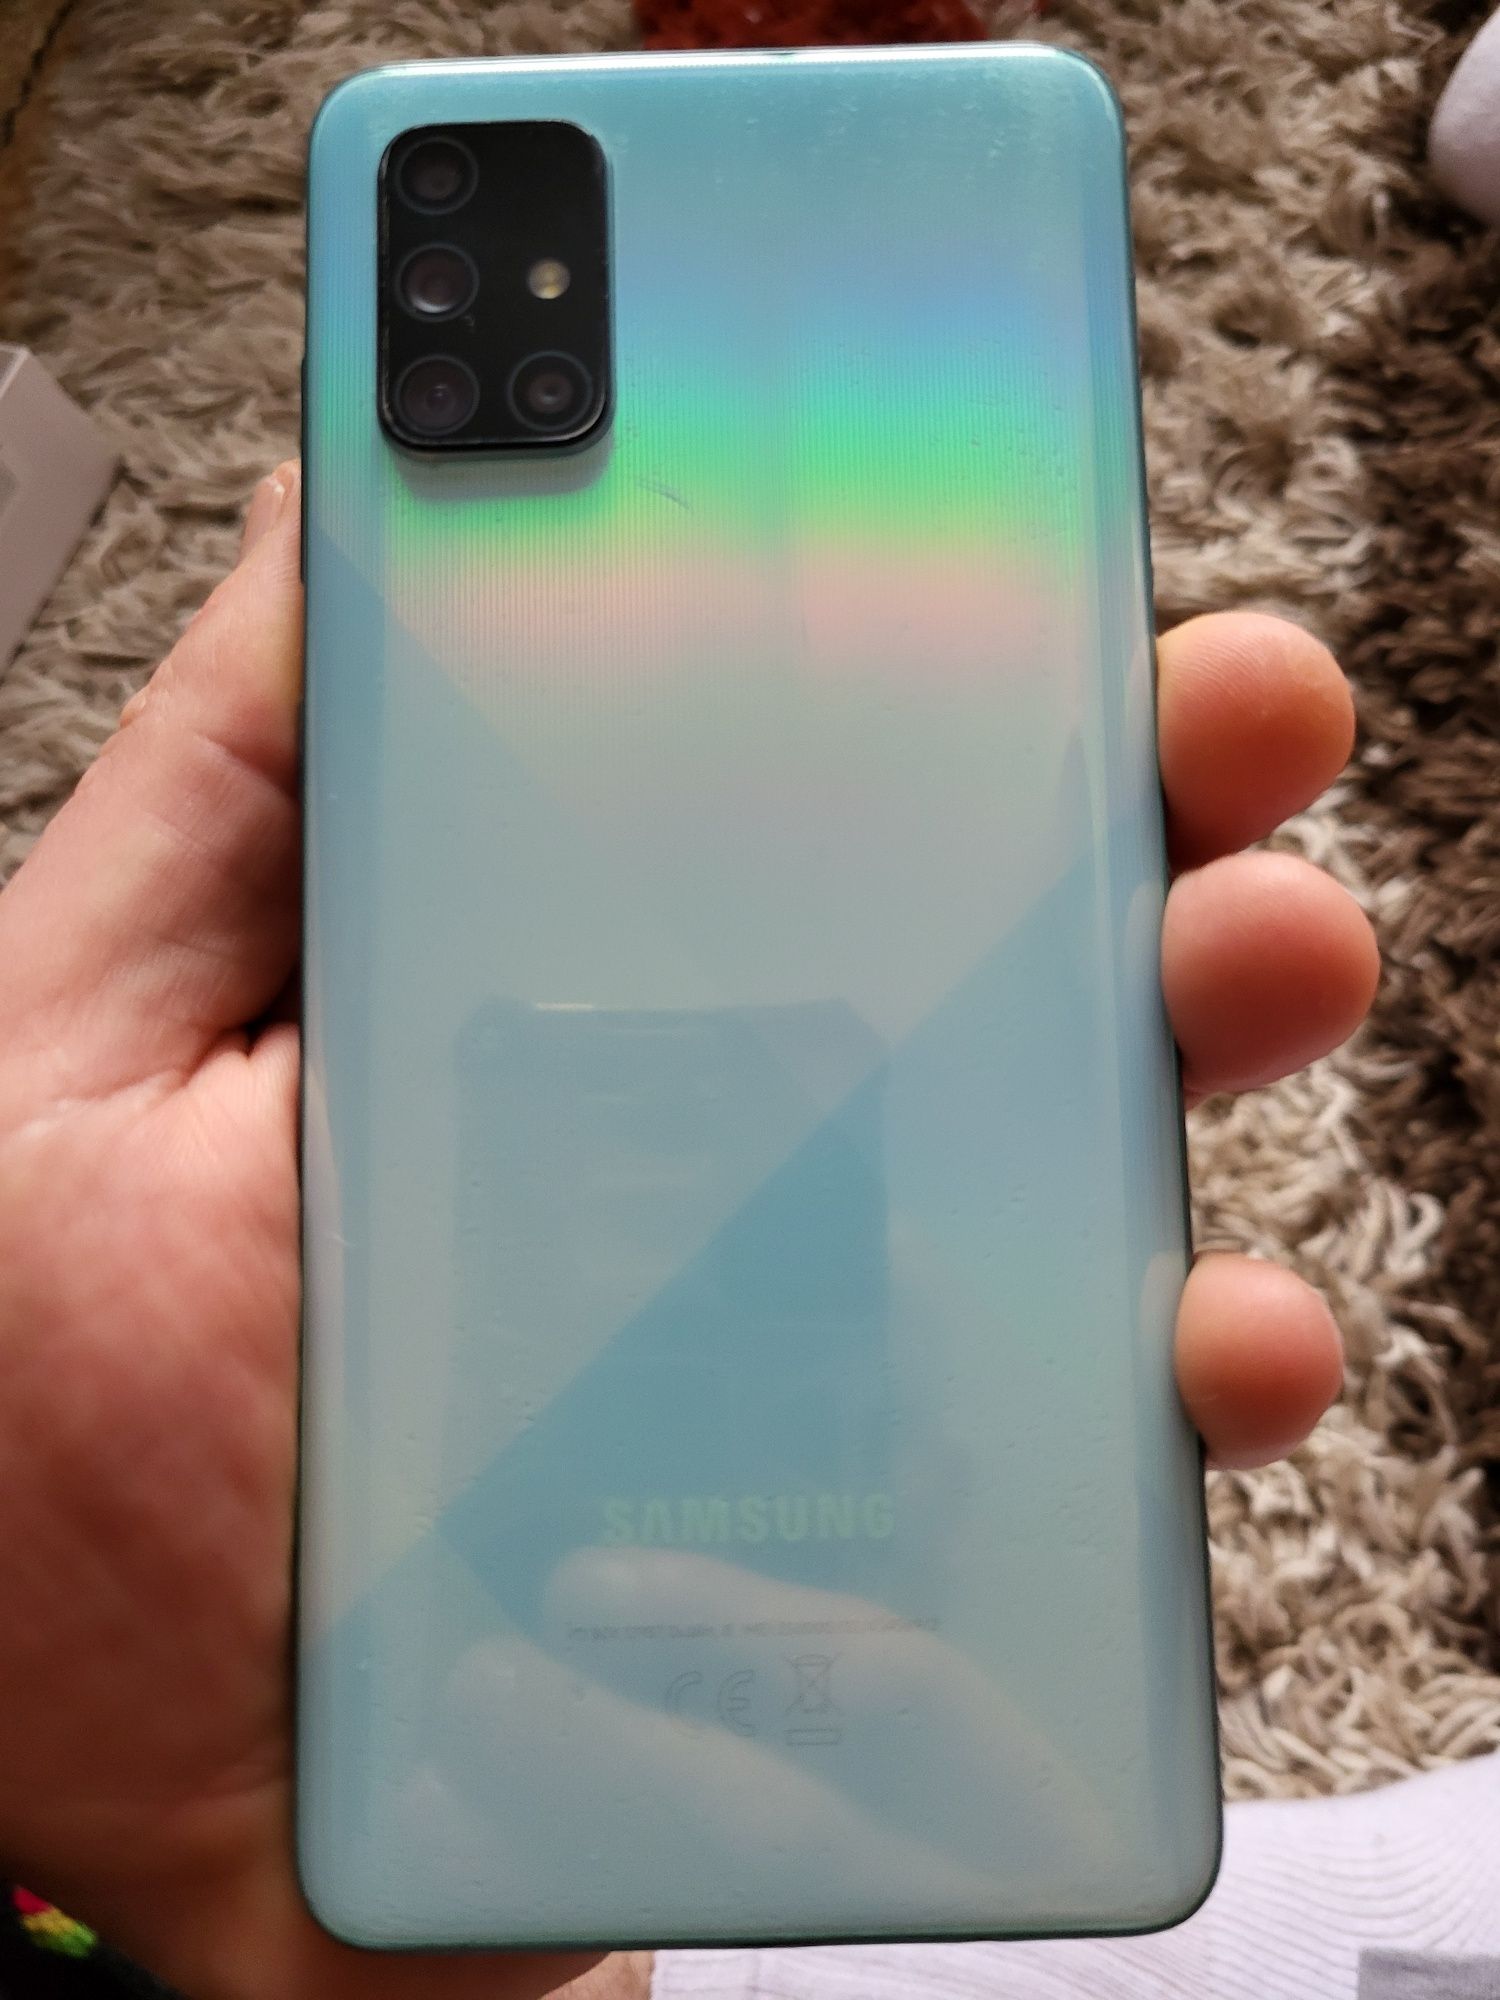 SAMSUNG Galaxy A71